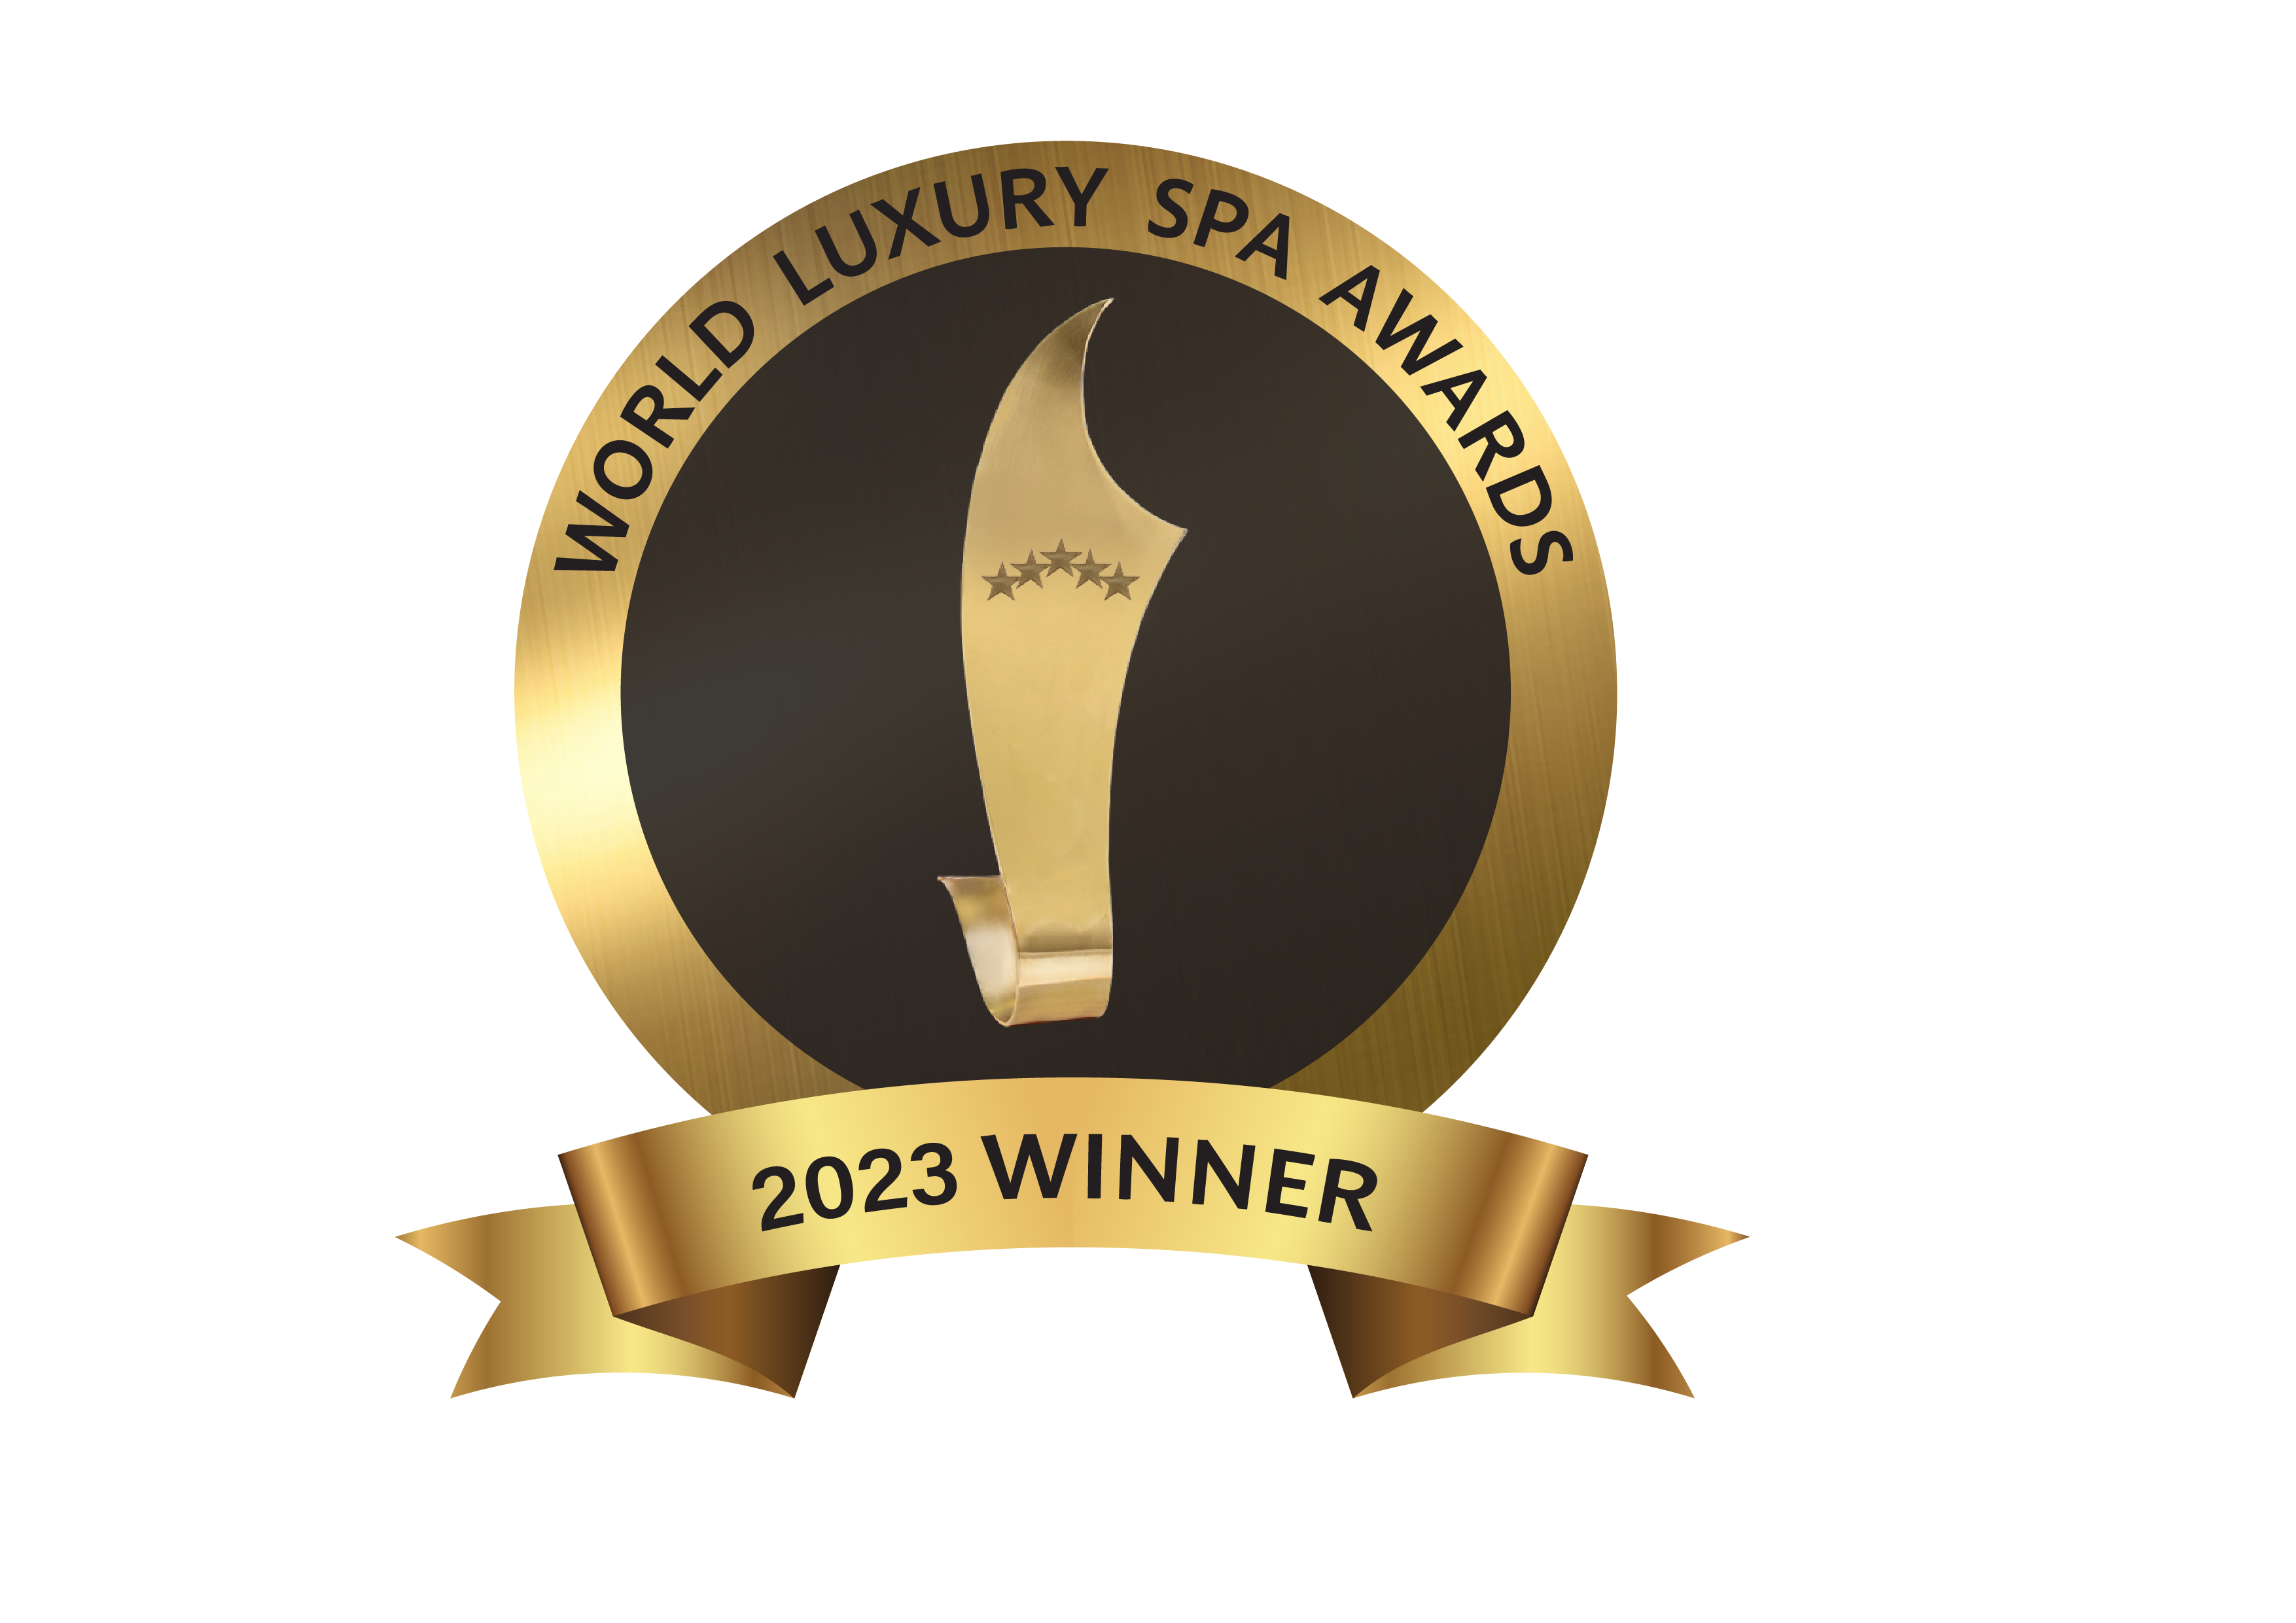 World Luxury Spa Awards 2023 Winner ribbon/medal design